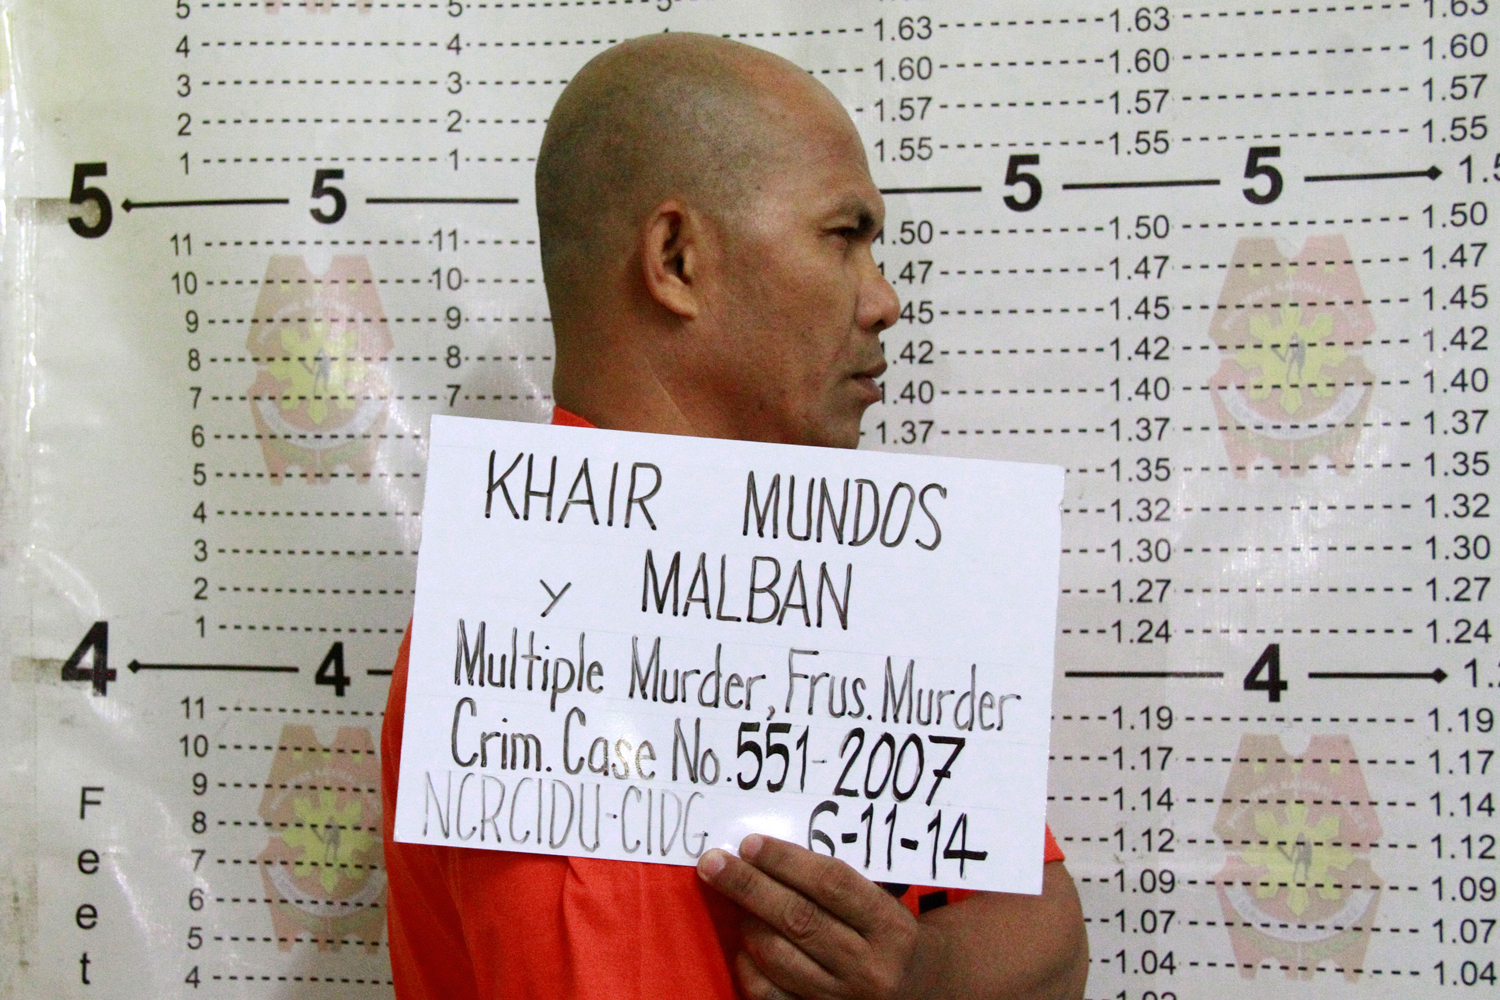 Capturado en Manila uno de los terroristas más buscados por Estados Unidos, Khair Mundos